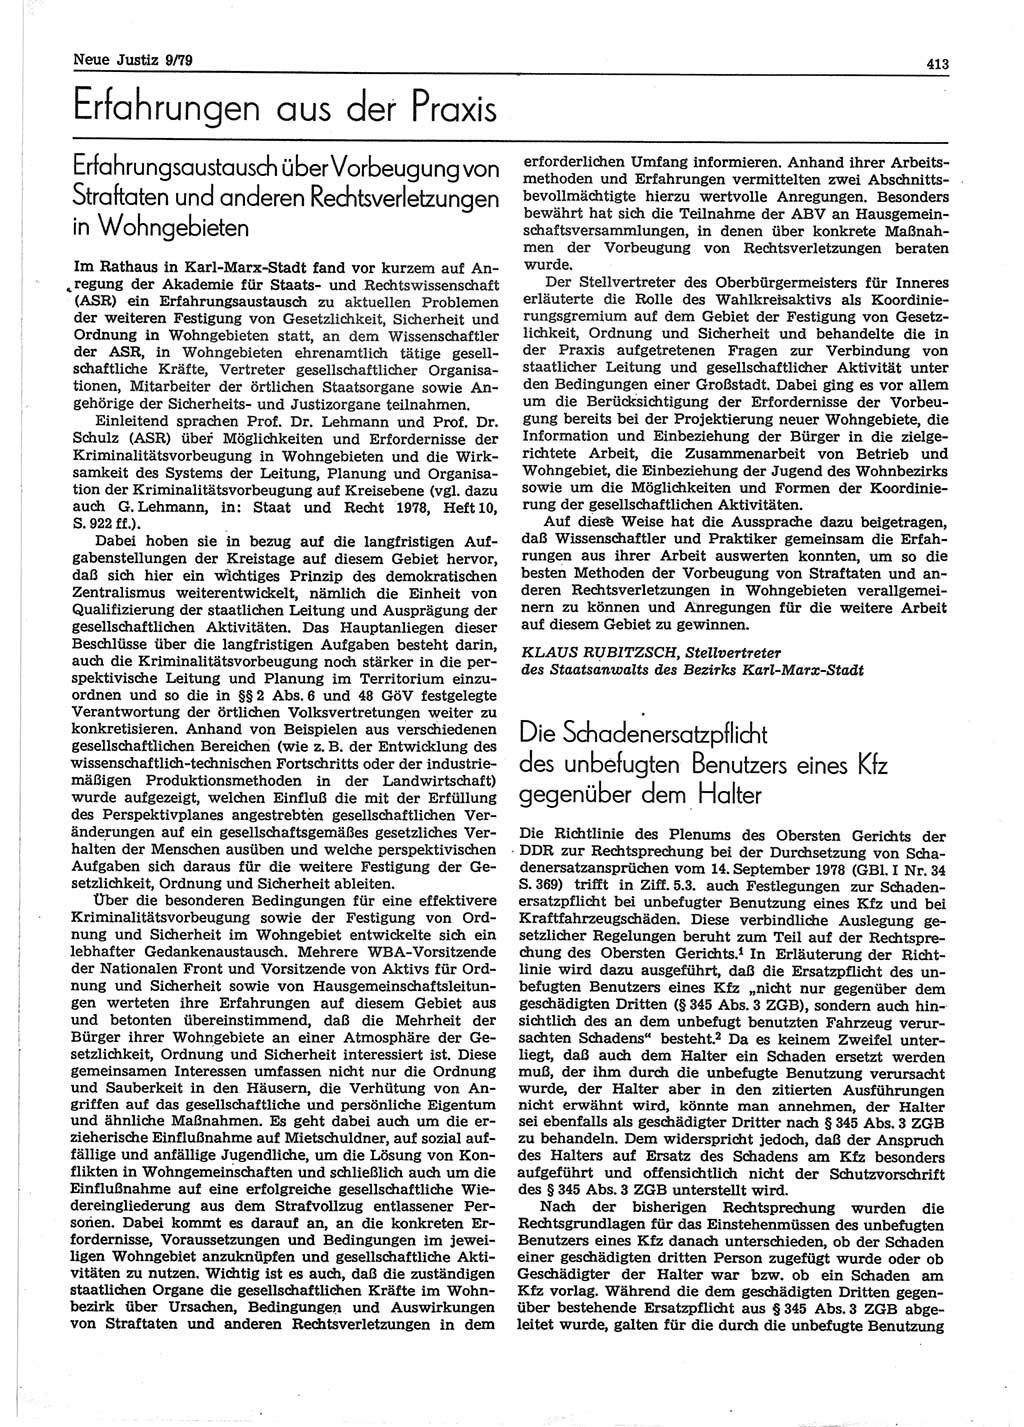 Neue Justiz (NJ), Zeitschrift für sozialistisches Recht und Gesetzlichkeit [Deutsche Demokratische Republik (DDR)], 33. Jahrgang 1979, Seite 413 (NJ DDR 1979, S. 413)